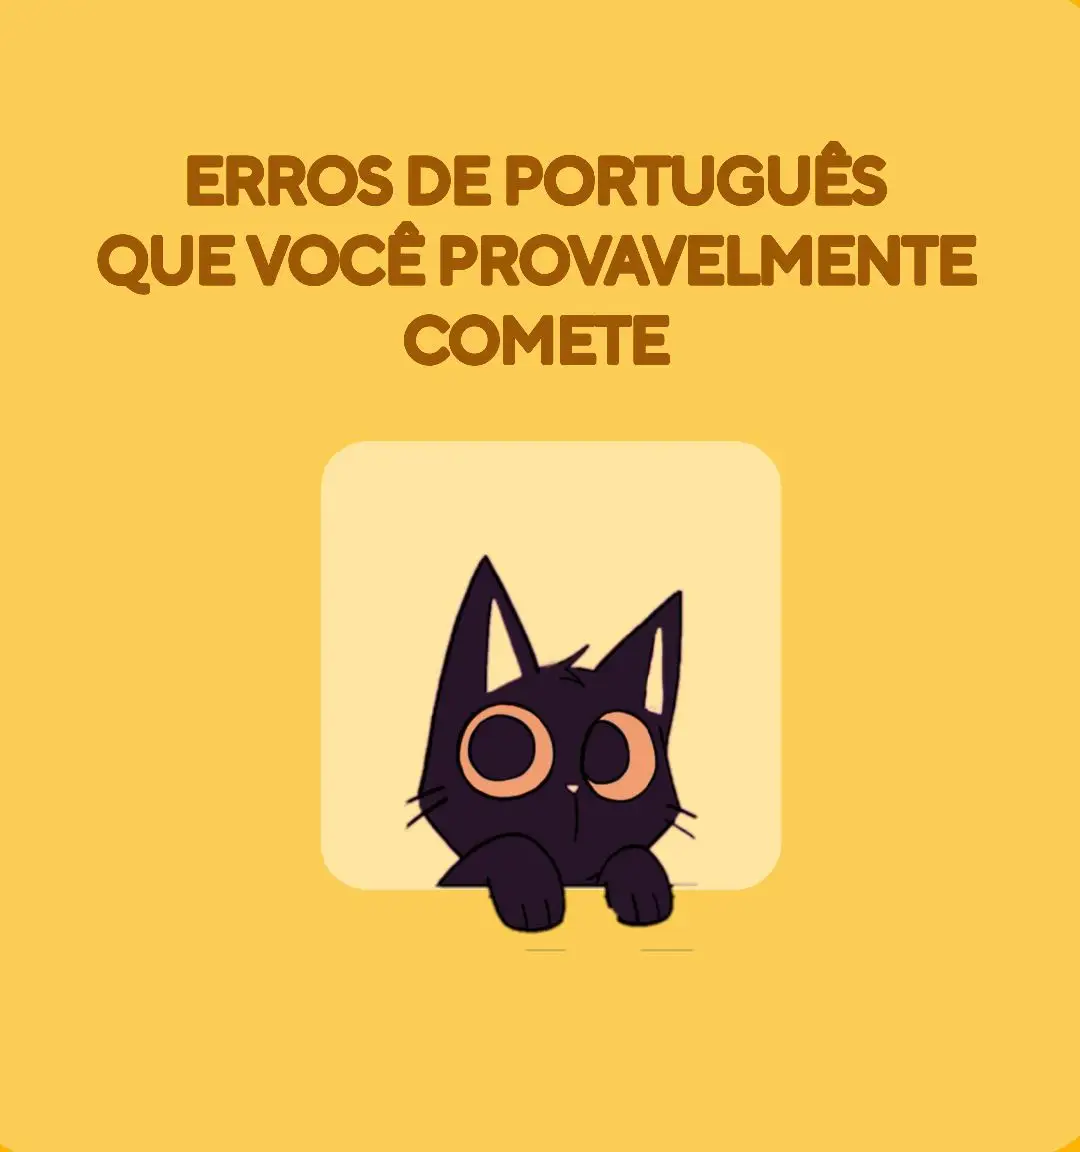 gatinhos te ajudando com pequenos erros 😸 #portugues #dicasestudos #estudante 